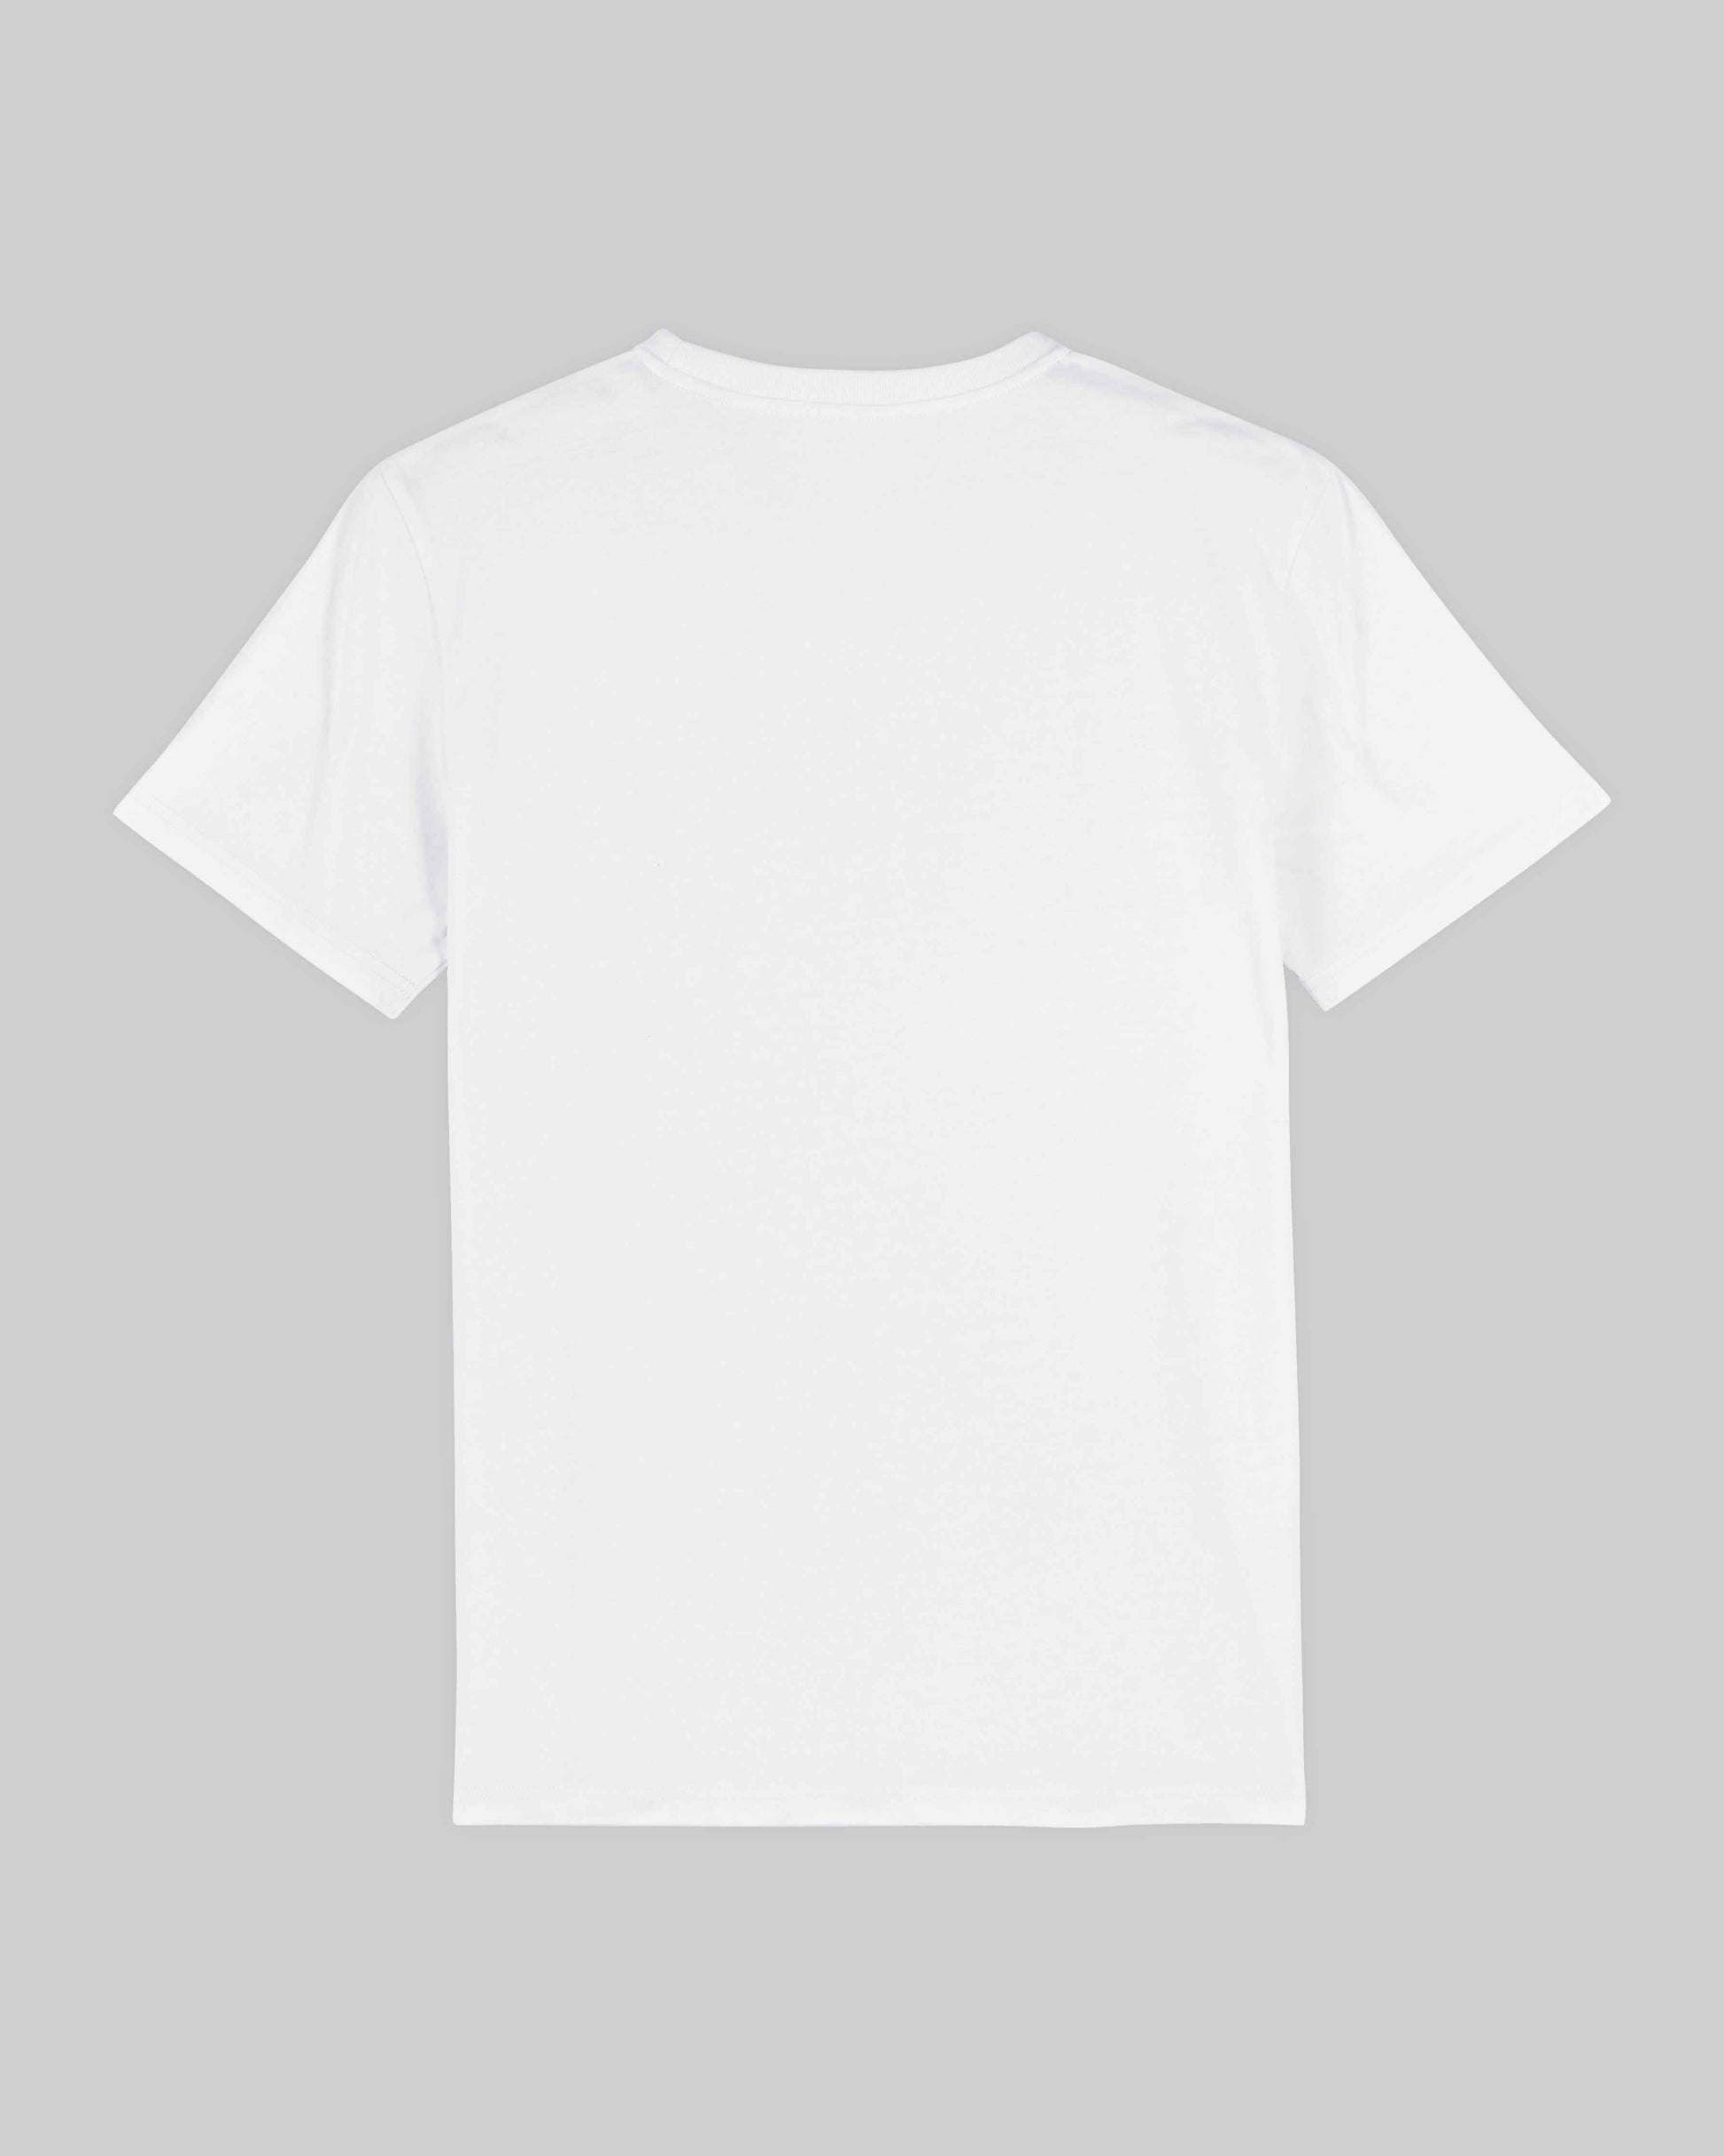 EINHORST® unisex Organic Shirt in Weiß mit dem Motiv "lgbtq+ Regenbogen" in der Kombination schwarzer Regenbogen mit bunter Schrift, Bild von Shirt von hinten